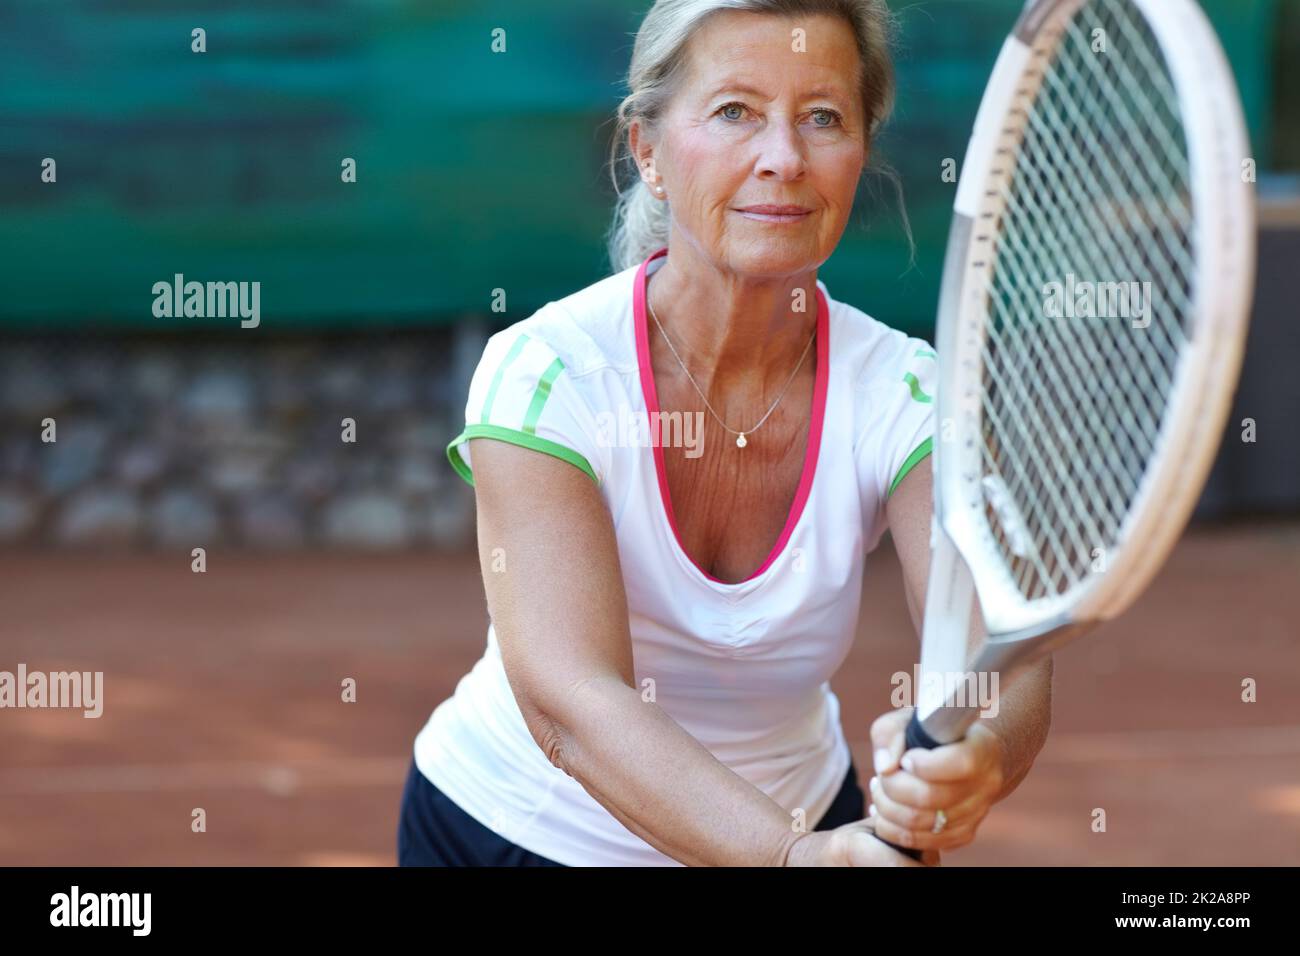 Engagierter Tennisspieler. Ältere Frau, die sich darauf vorbereitet, während eines Tennisspiels einen Aufschlag zurückzugeben. Stockfoto